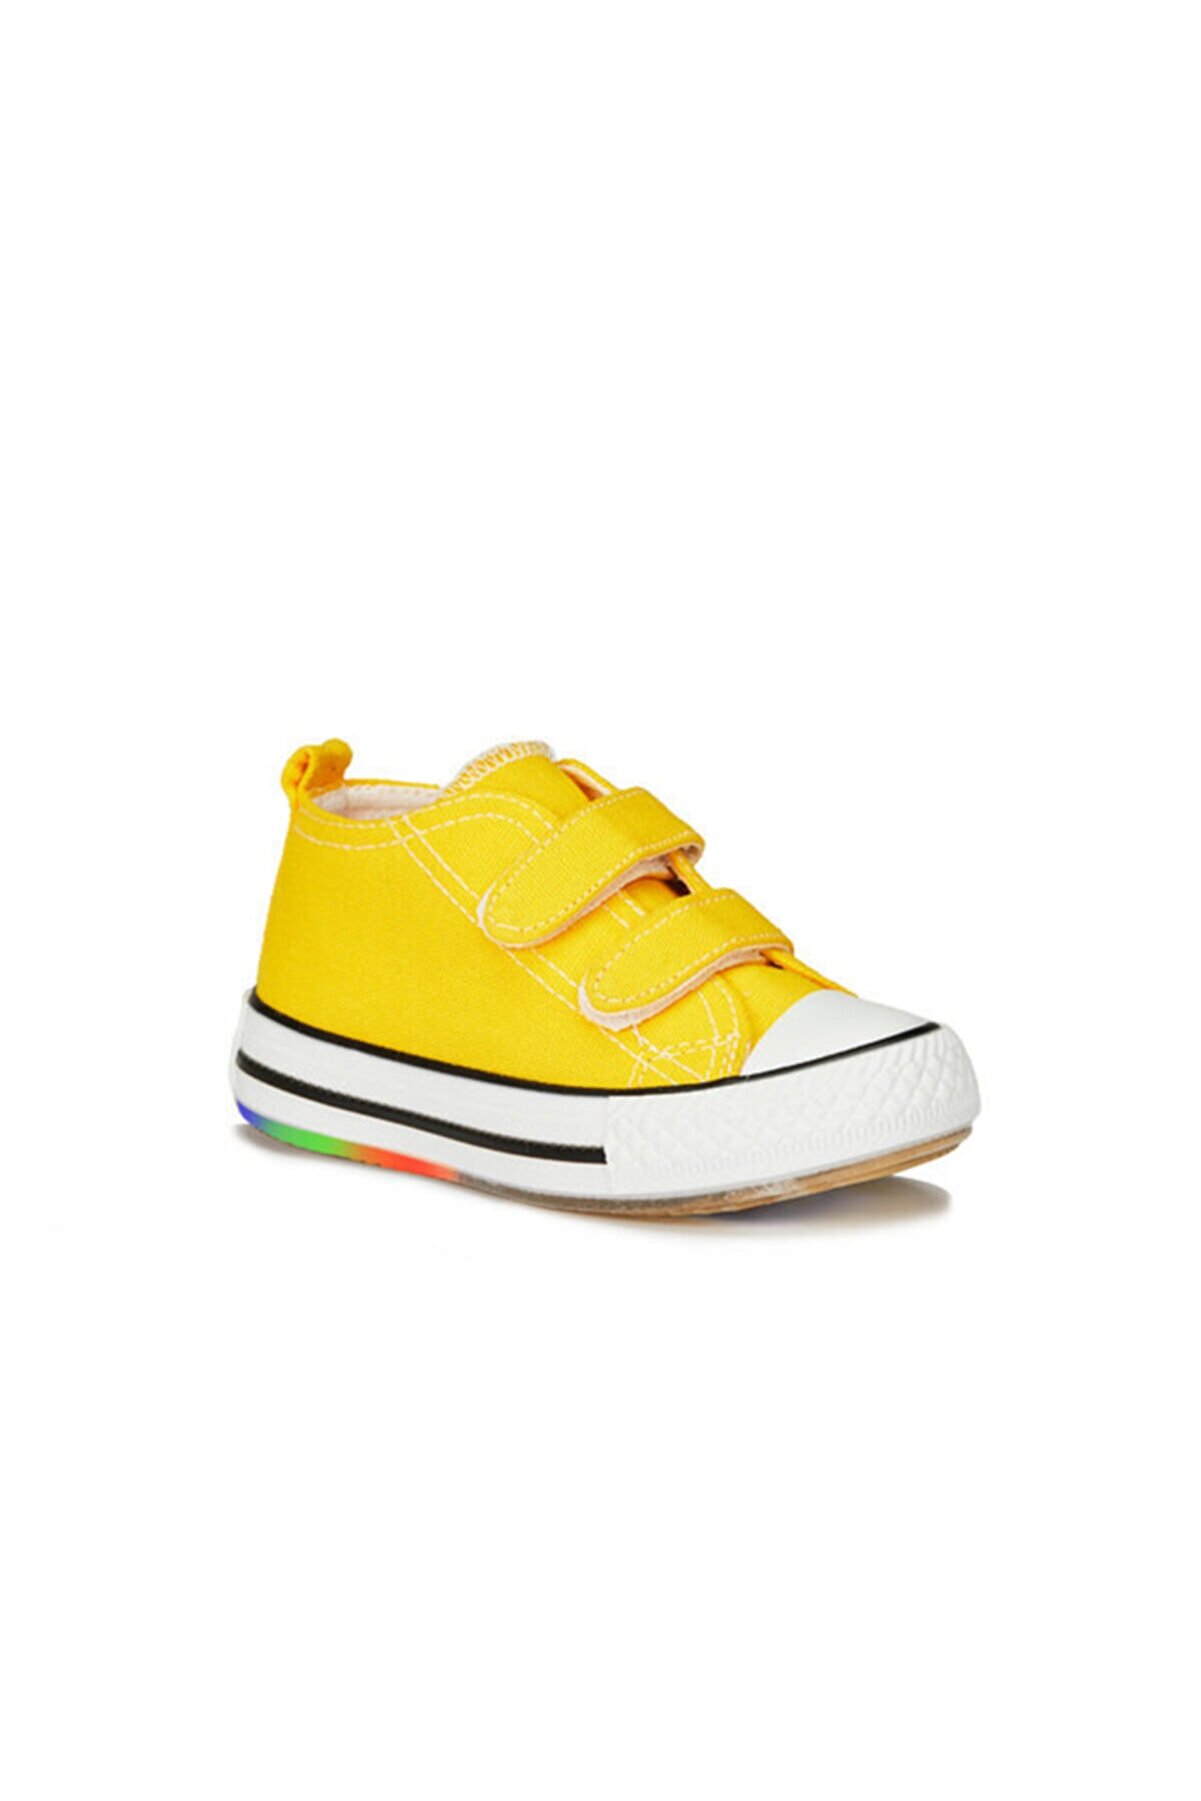 Vicco Pino Unisex Çocuk Sarı Işıklı Converse Spor Ayakkabı